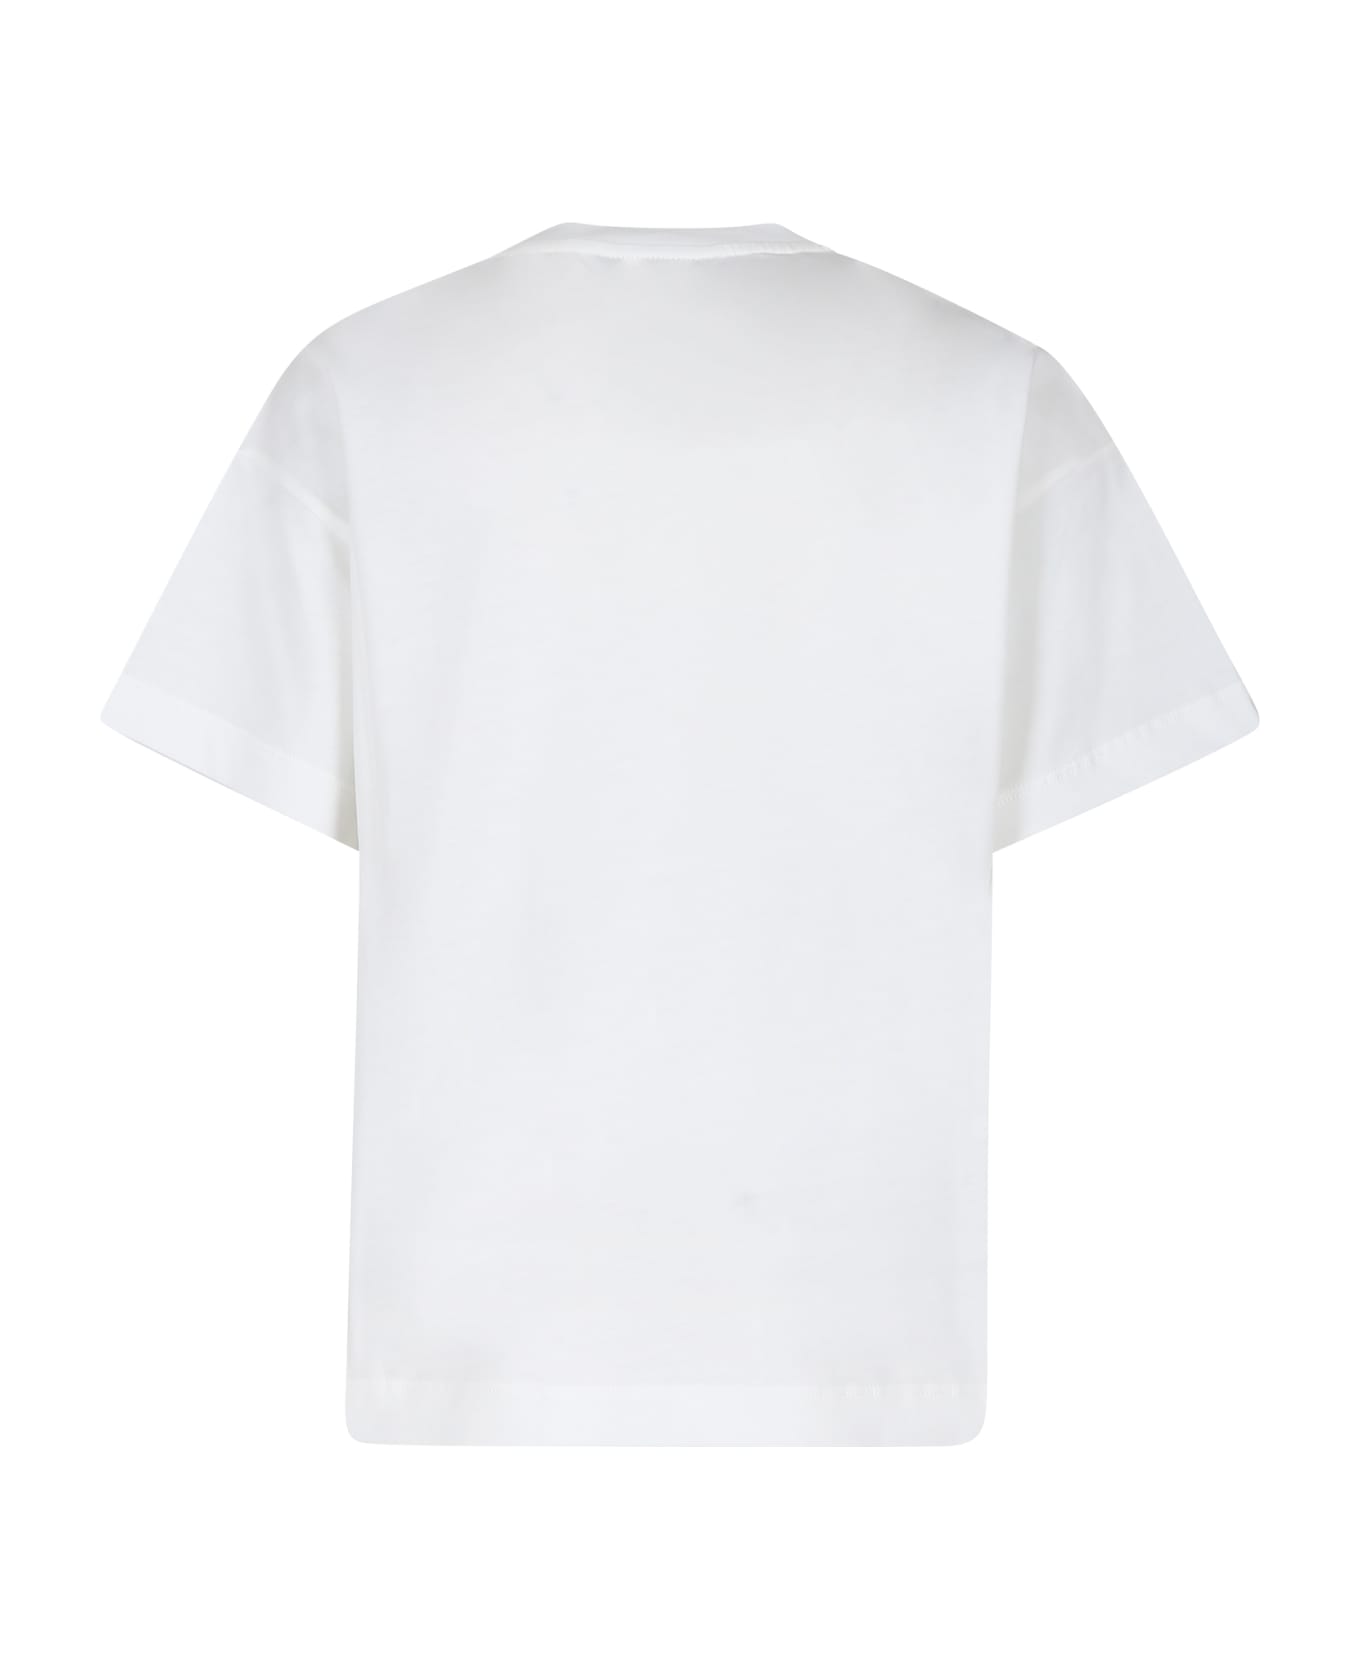 Fendi White T-shirt For Kids With Yellow Logo - White